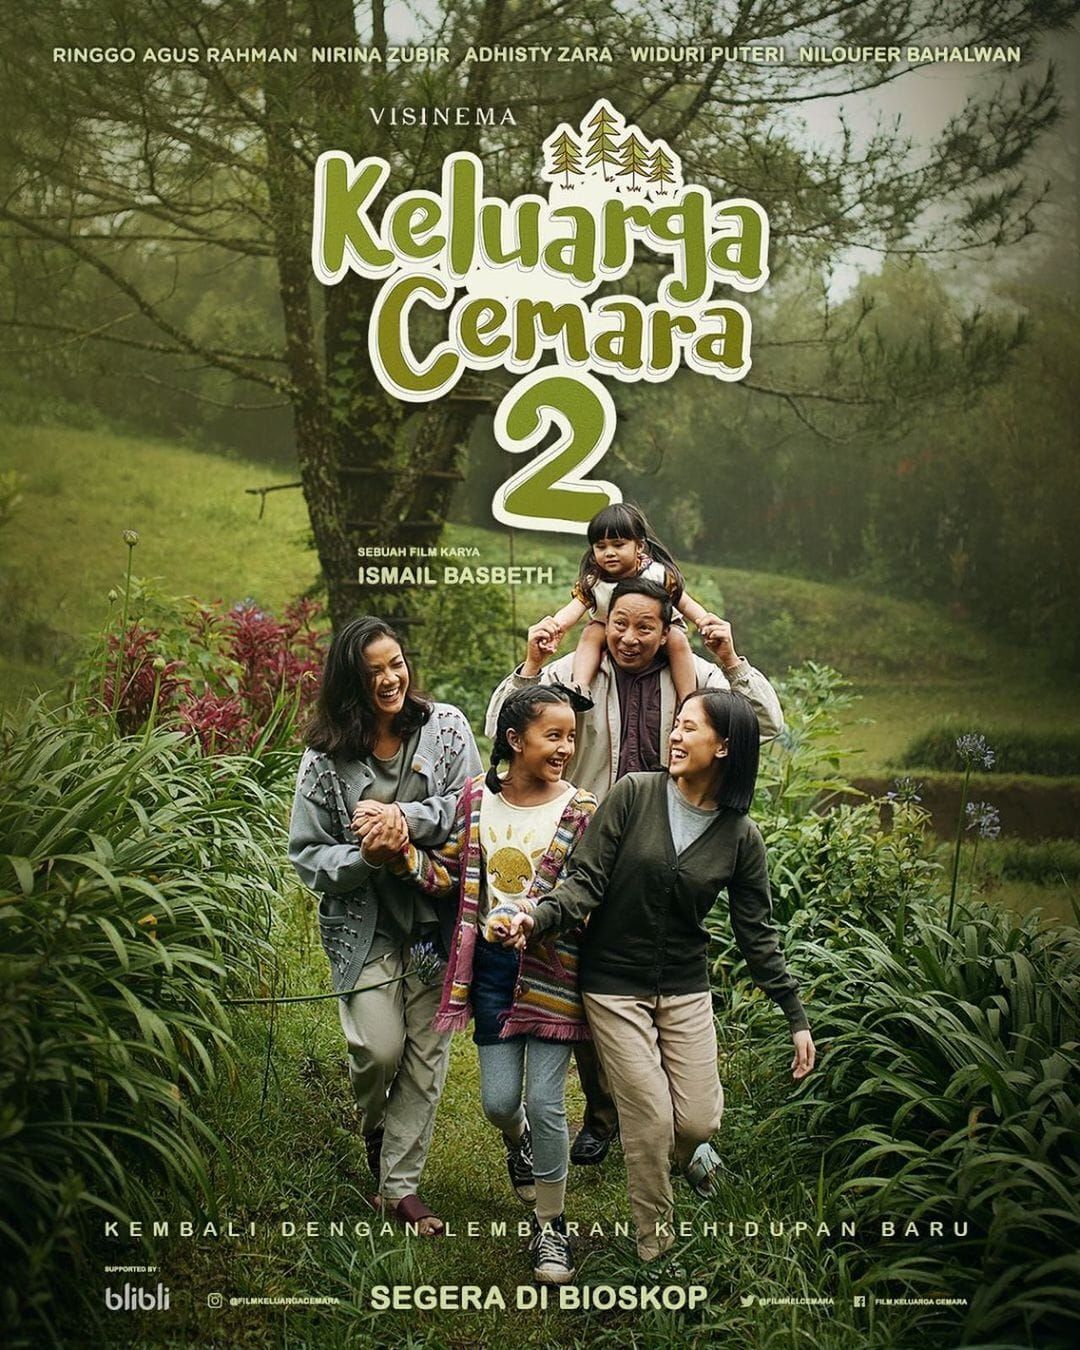 Film Keluarga Cemara 2 Akan tayang Dalam Waktu Dekat, Trailernya Resmi Dirilis, ini yang Dikatakan Ringgo Agus Rahman